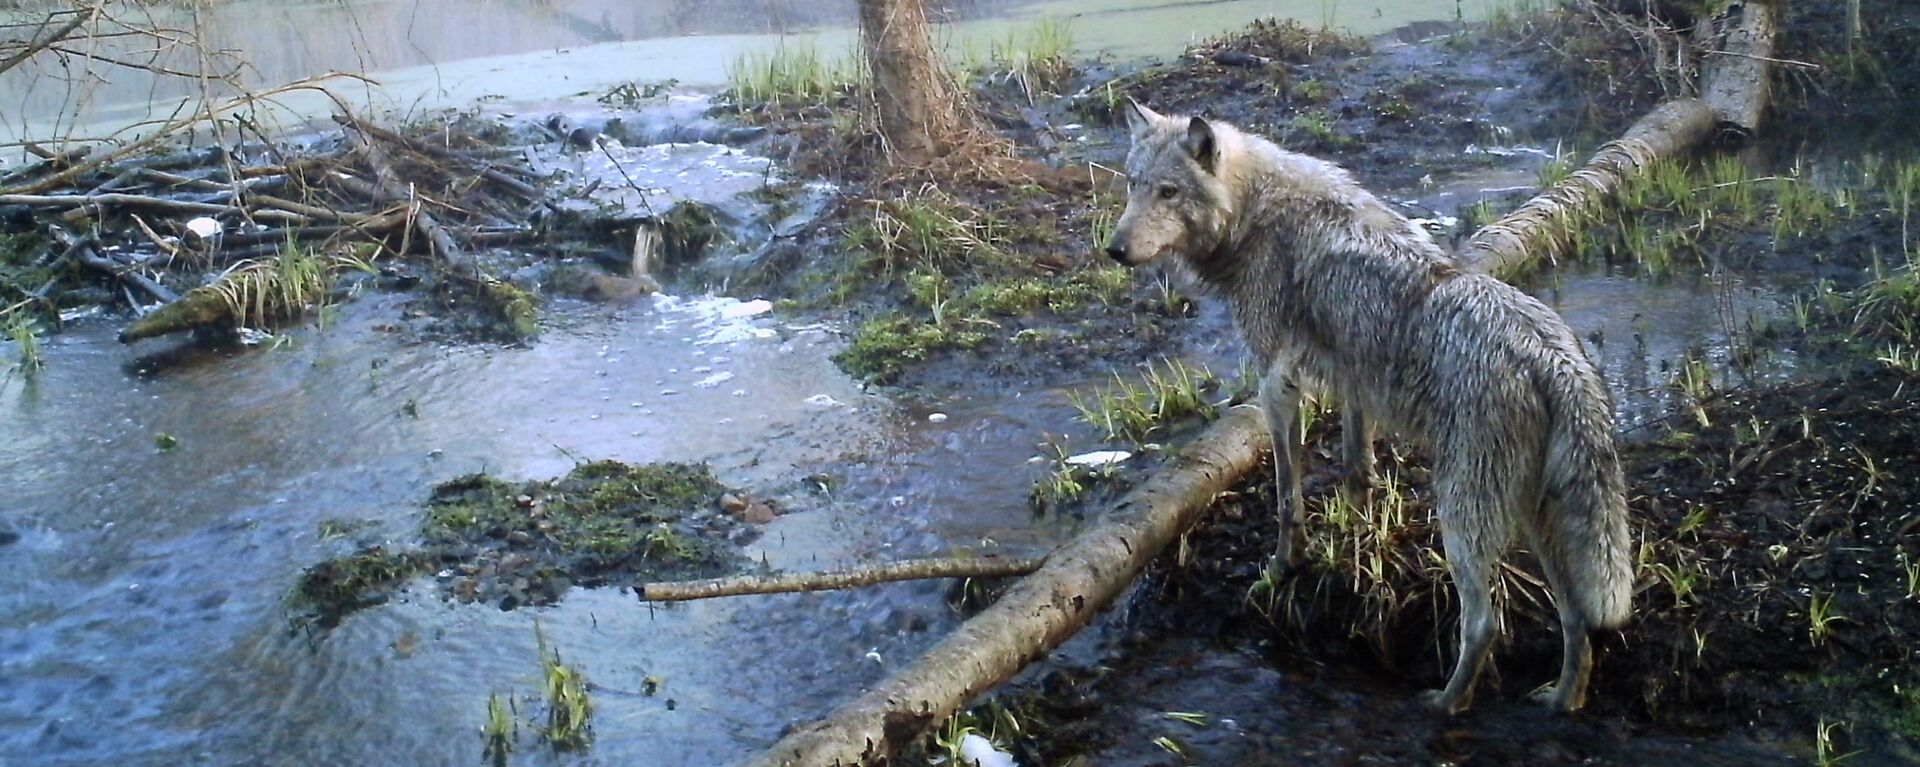 Волк в лесу в зоне отчуждения вокруг чернобыльской АЭС. Апрель 2012 года - Sputnik Кыргызстан, 1920, 24.06.2019